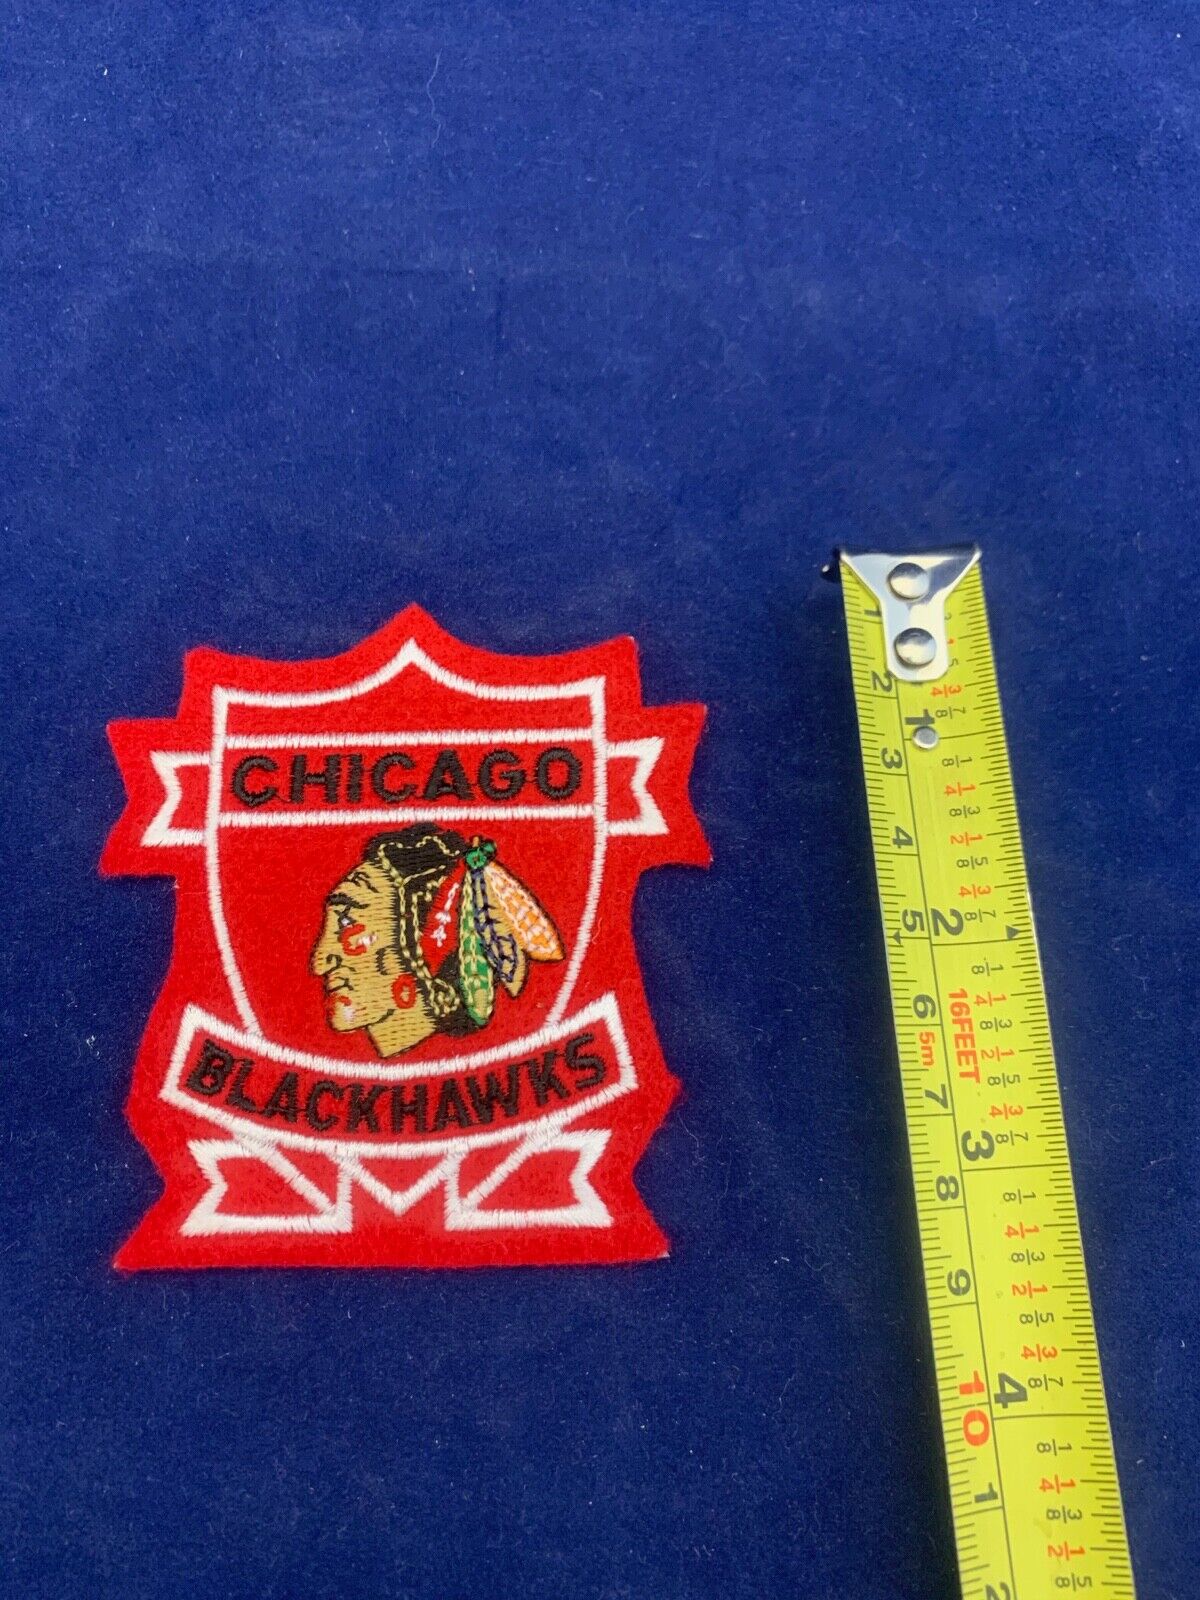 Chicago Blackhawks NHL Hockey Patch Size 3 x 3.5 inches